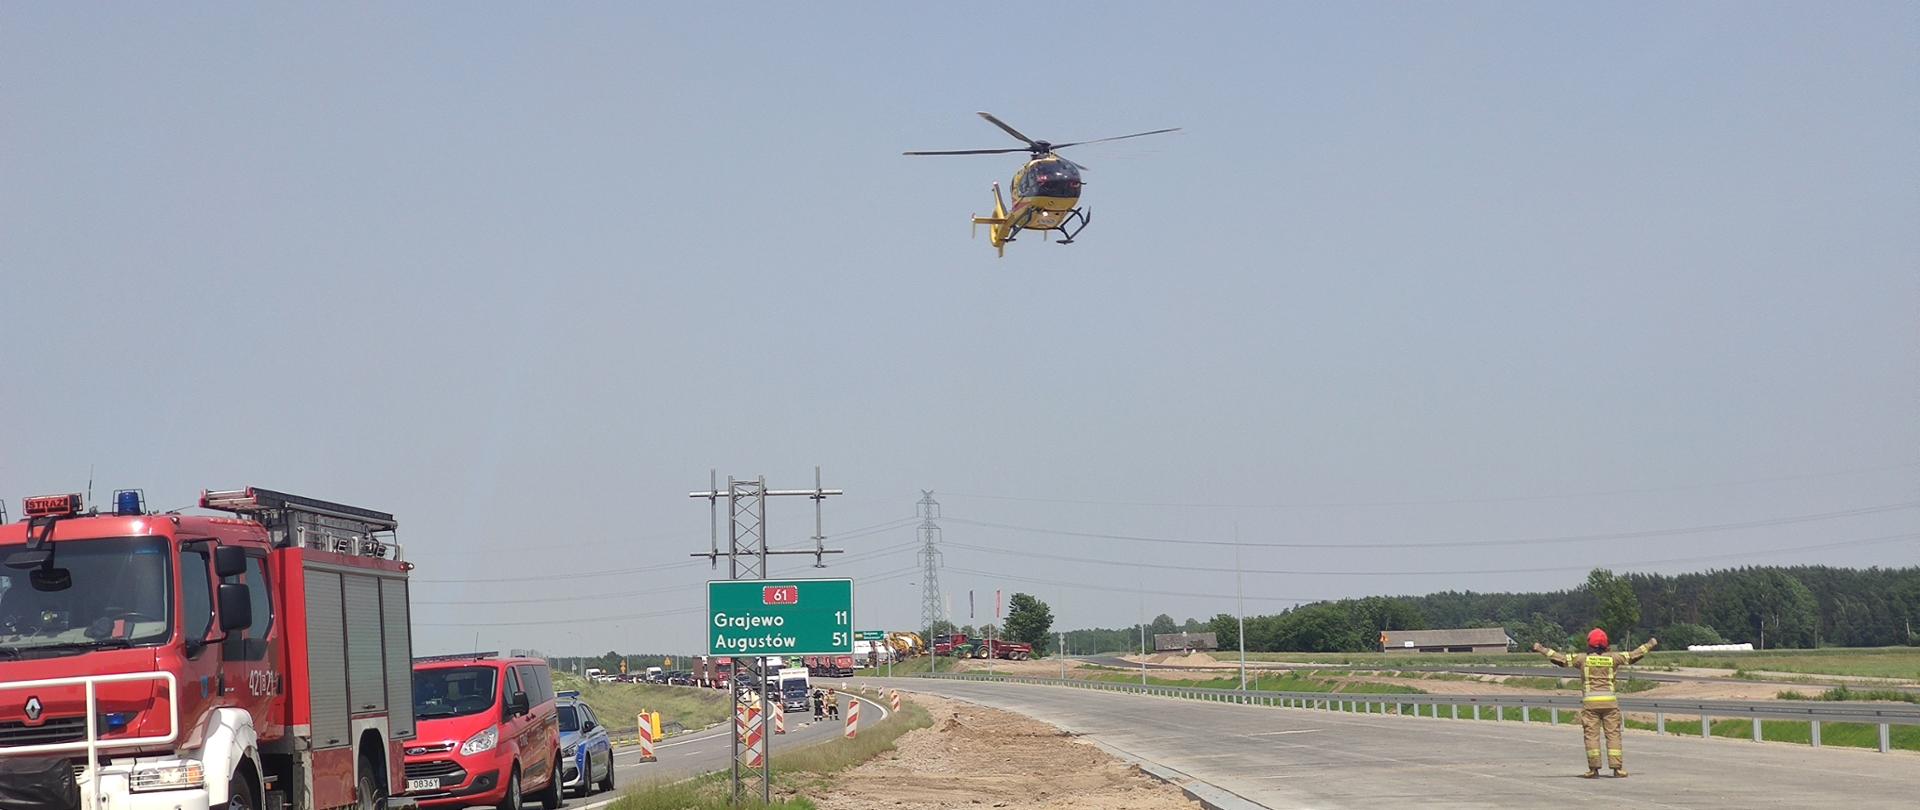 Śmigłowiec LPR w trakcie lądowania na jezdni. Z prawej strony stoi strażak i sprowadza gestem lądowania śmigłowiec. Z prawej stoją pojazdy służb ratowniczych.